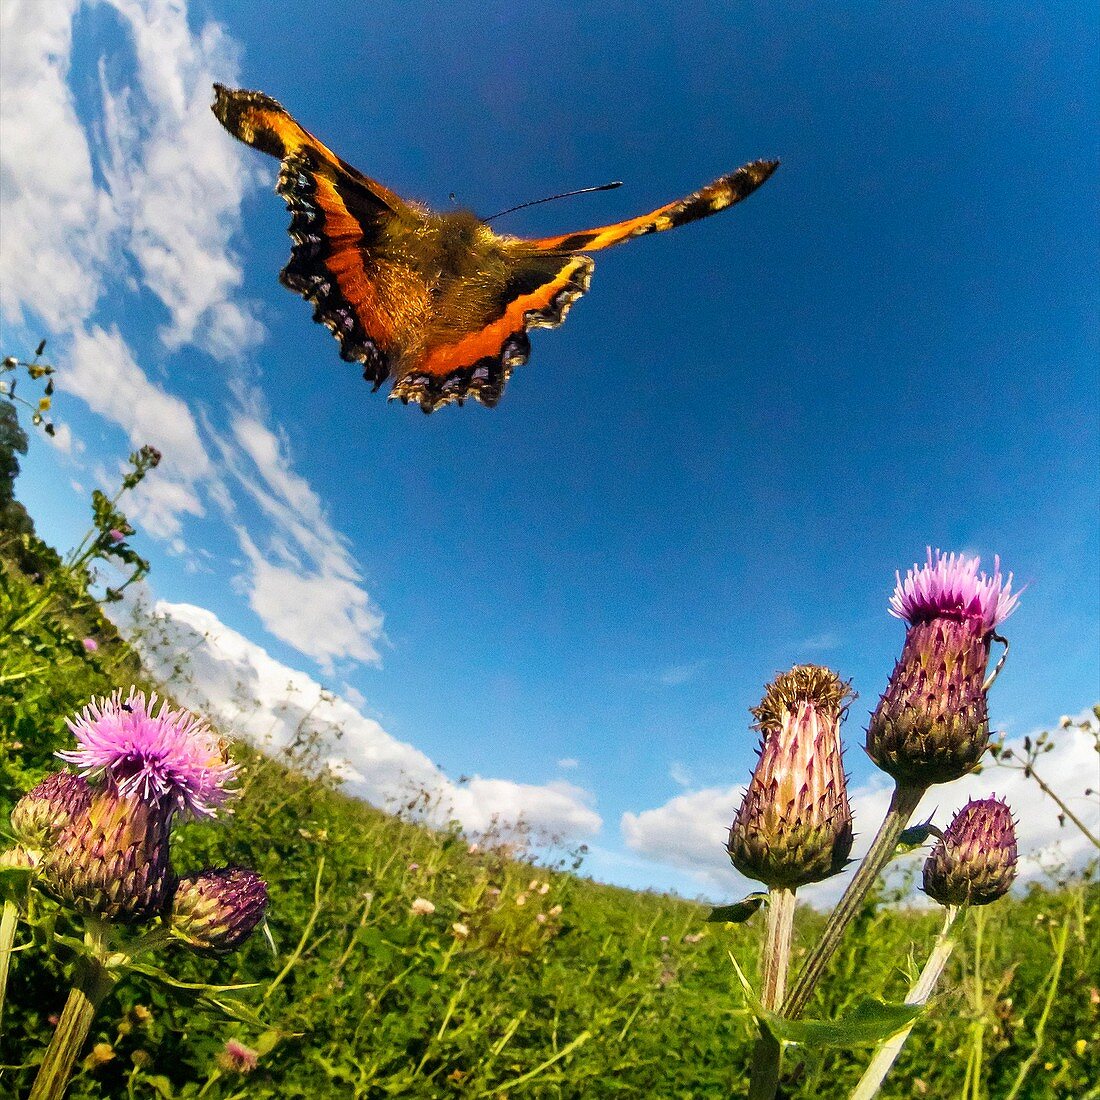 Tortoiseshell butterfly, high-speed fish-eye lens image